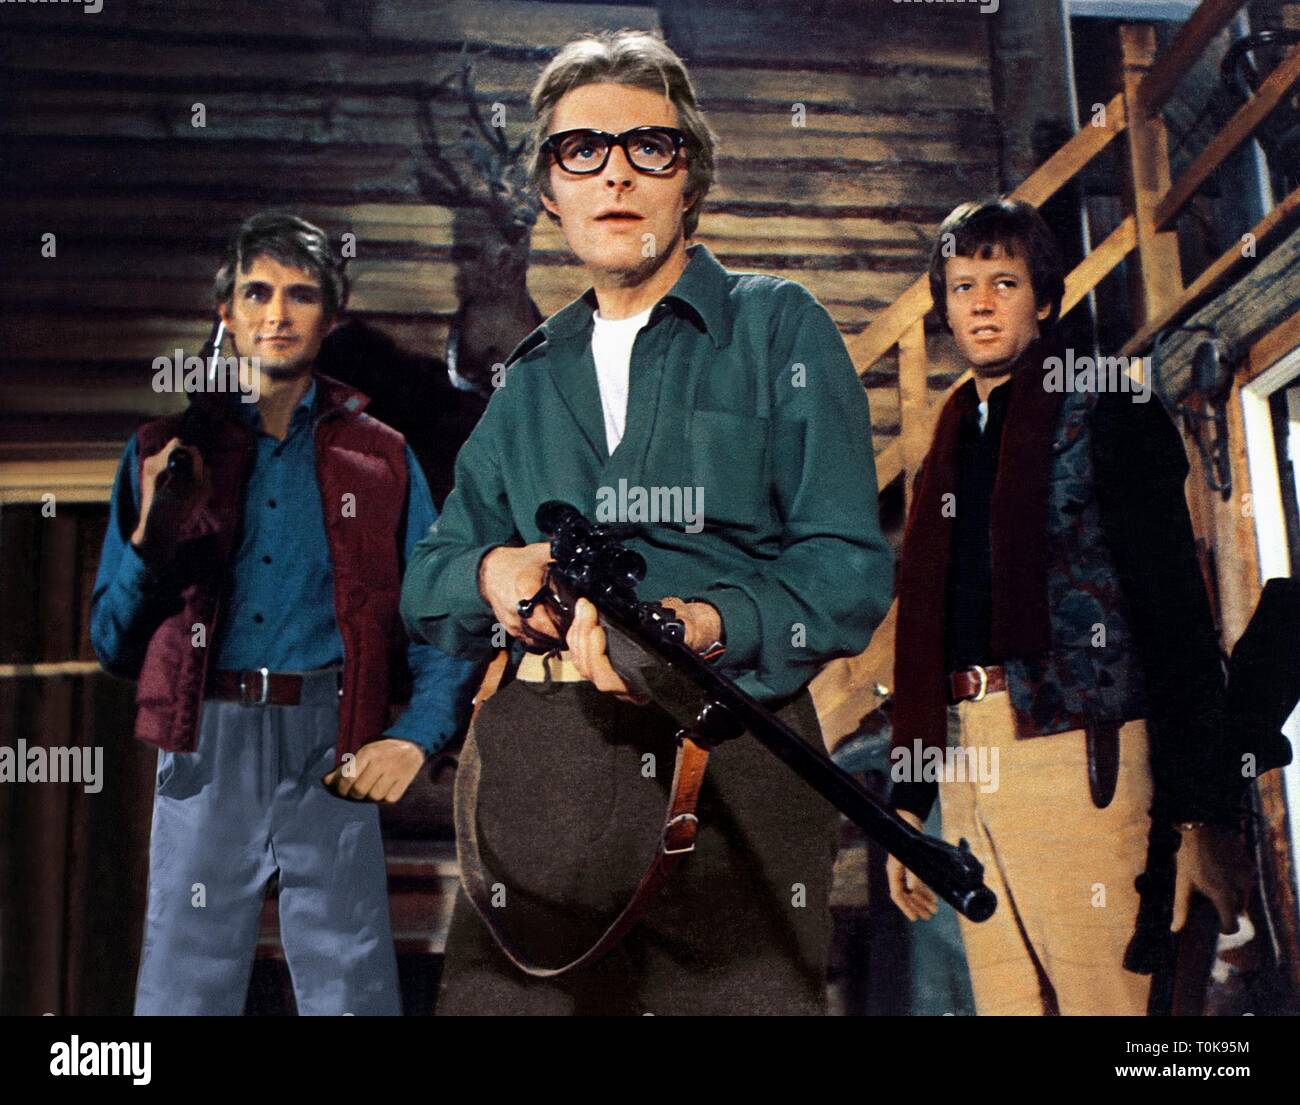 JOHN PHILLIP LAW, RICHARD LYNCH, Peter Fonda, SAISON, 1974 Banque D'Images